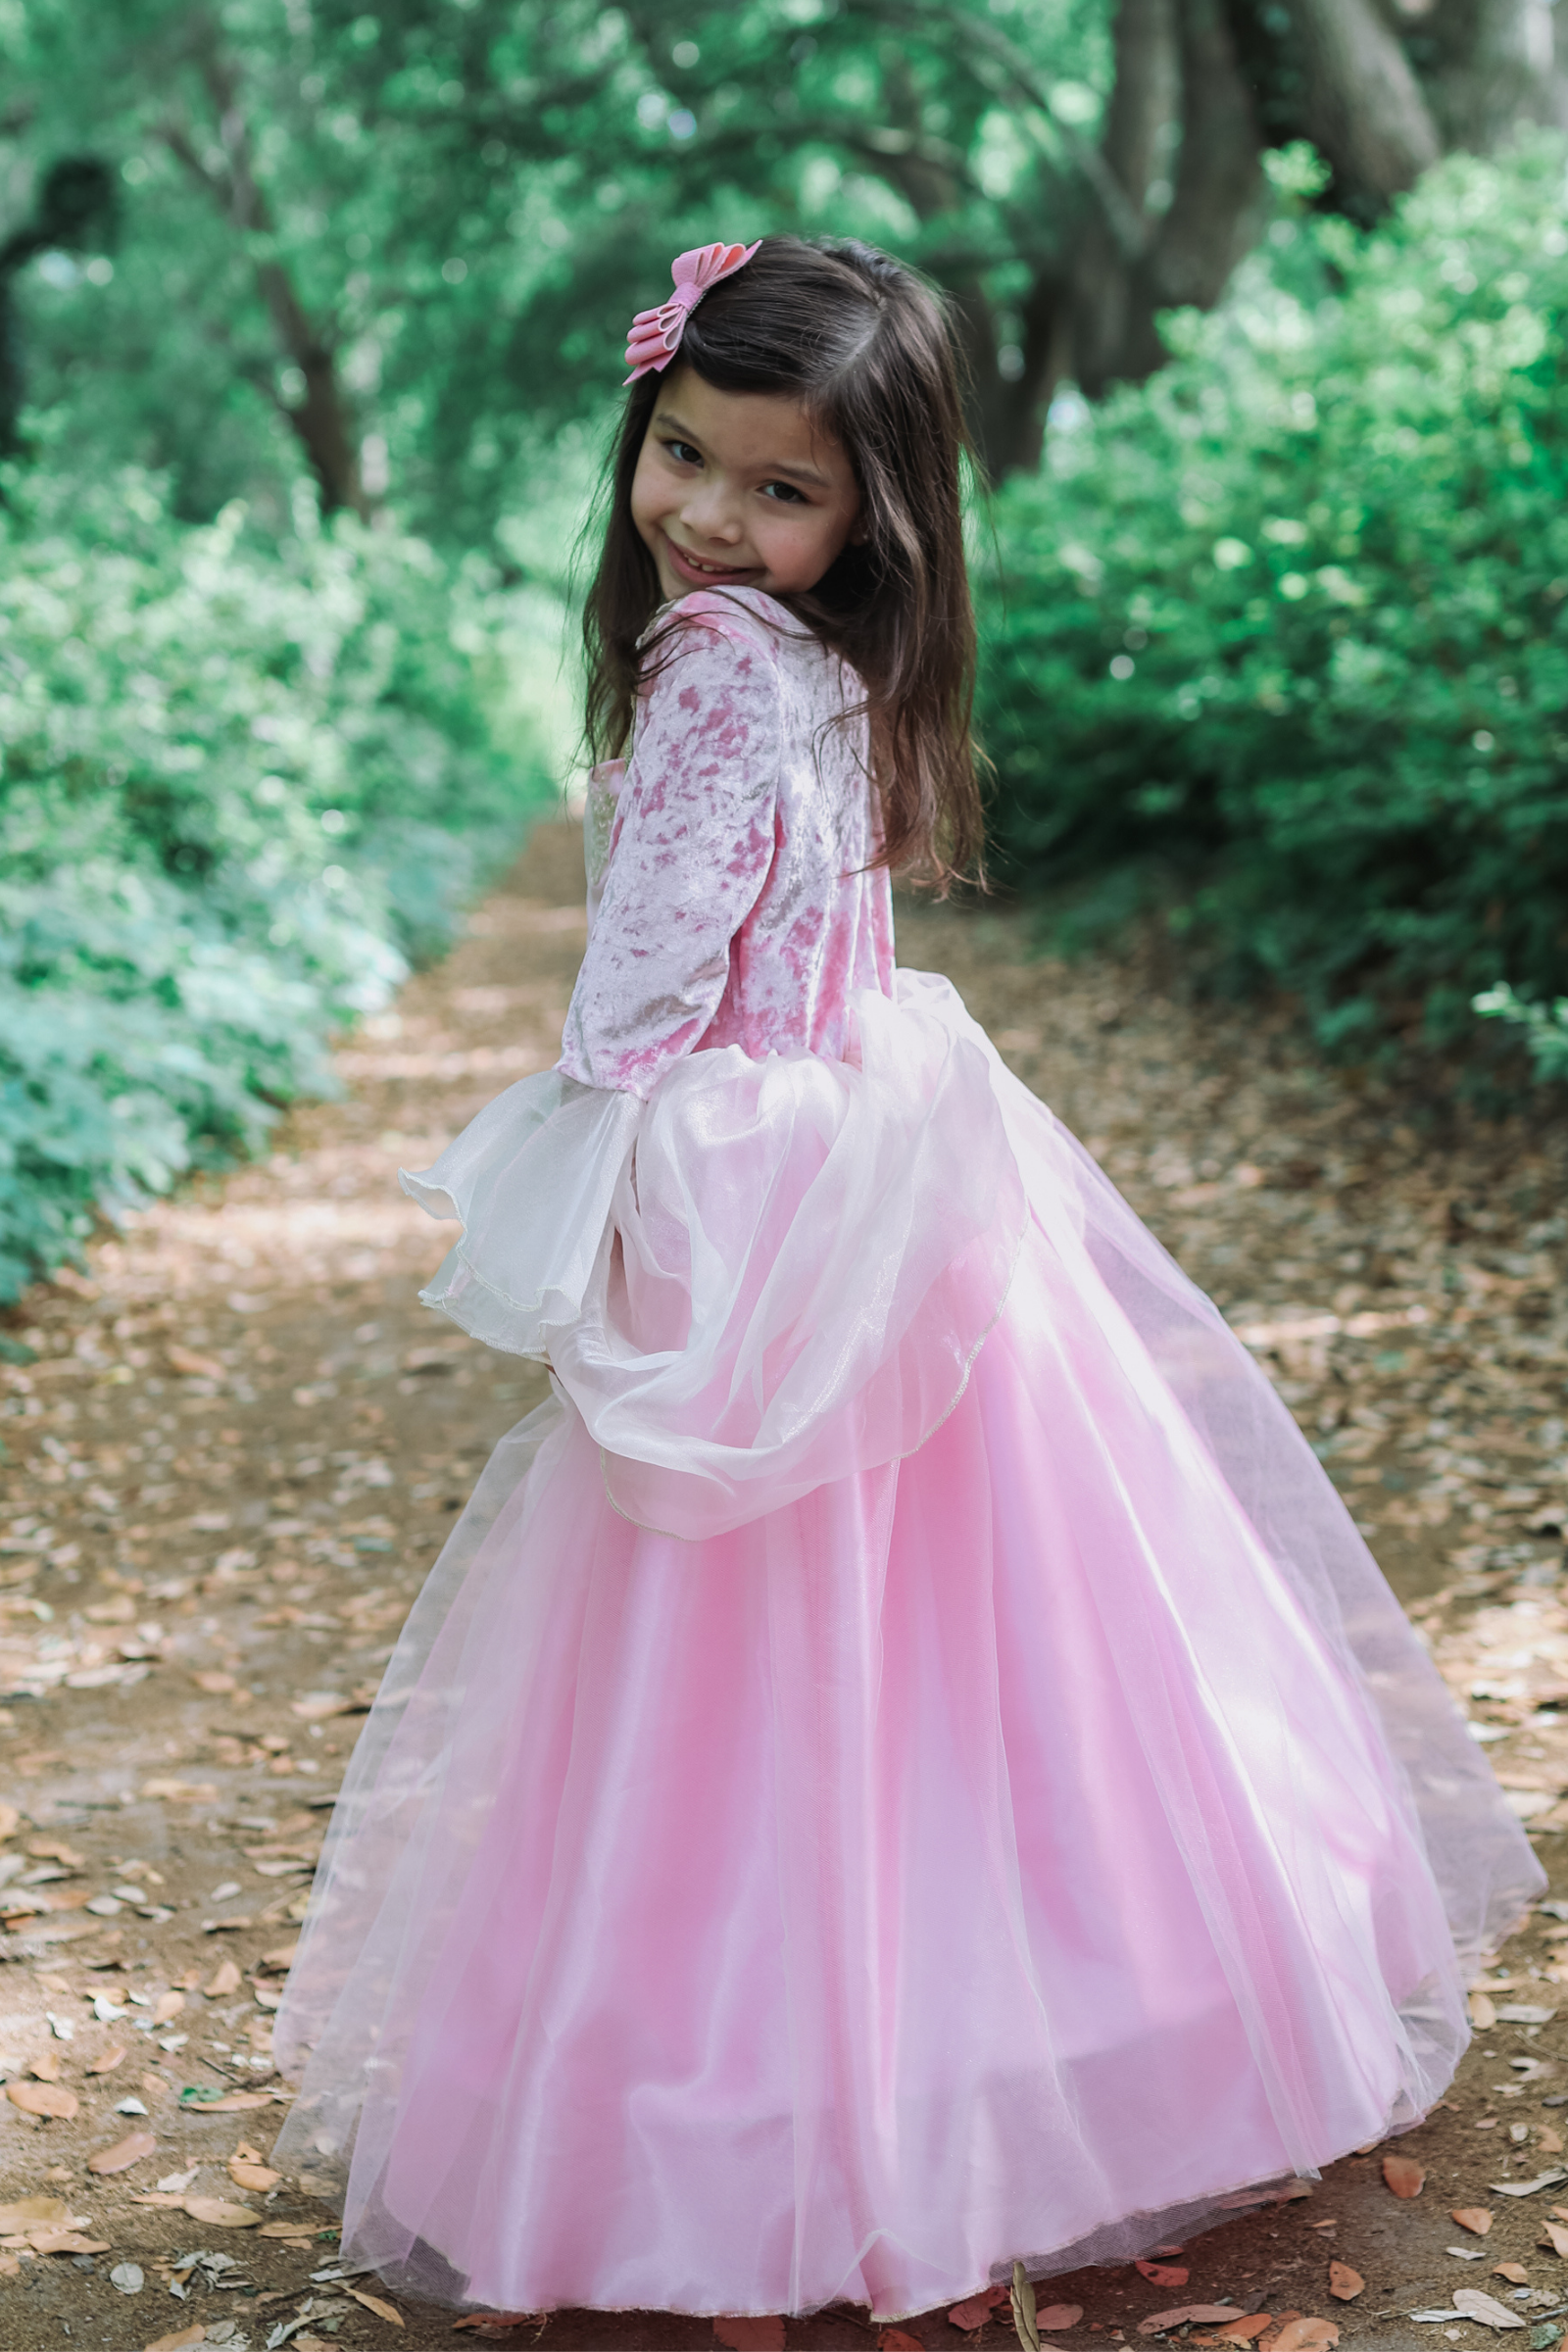 Rose Princess Dress - Pink Blush